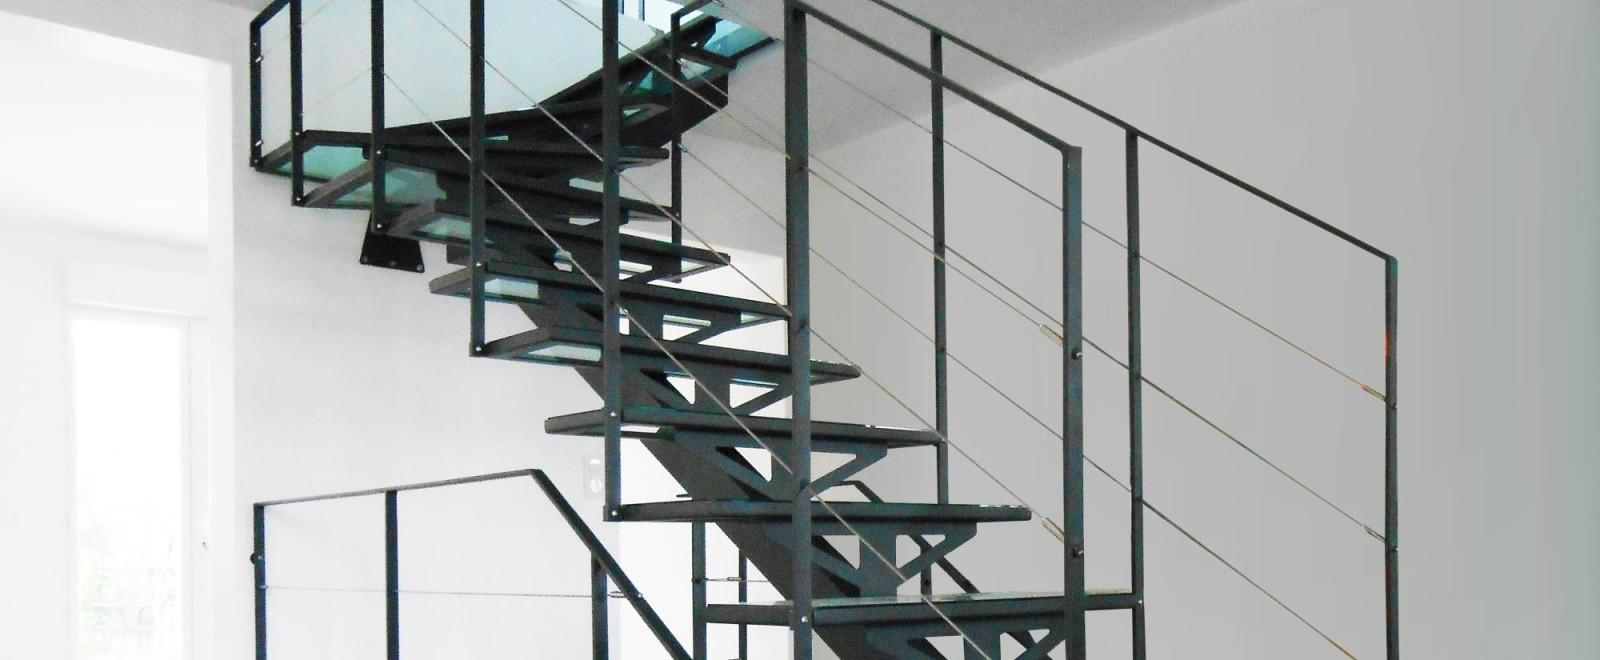 Лестница на монокосоуре с ограждениями и отделкой стеклом